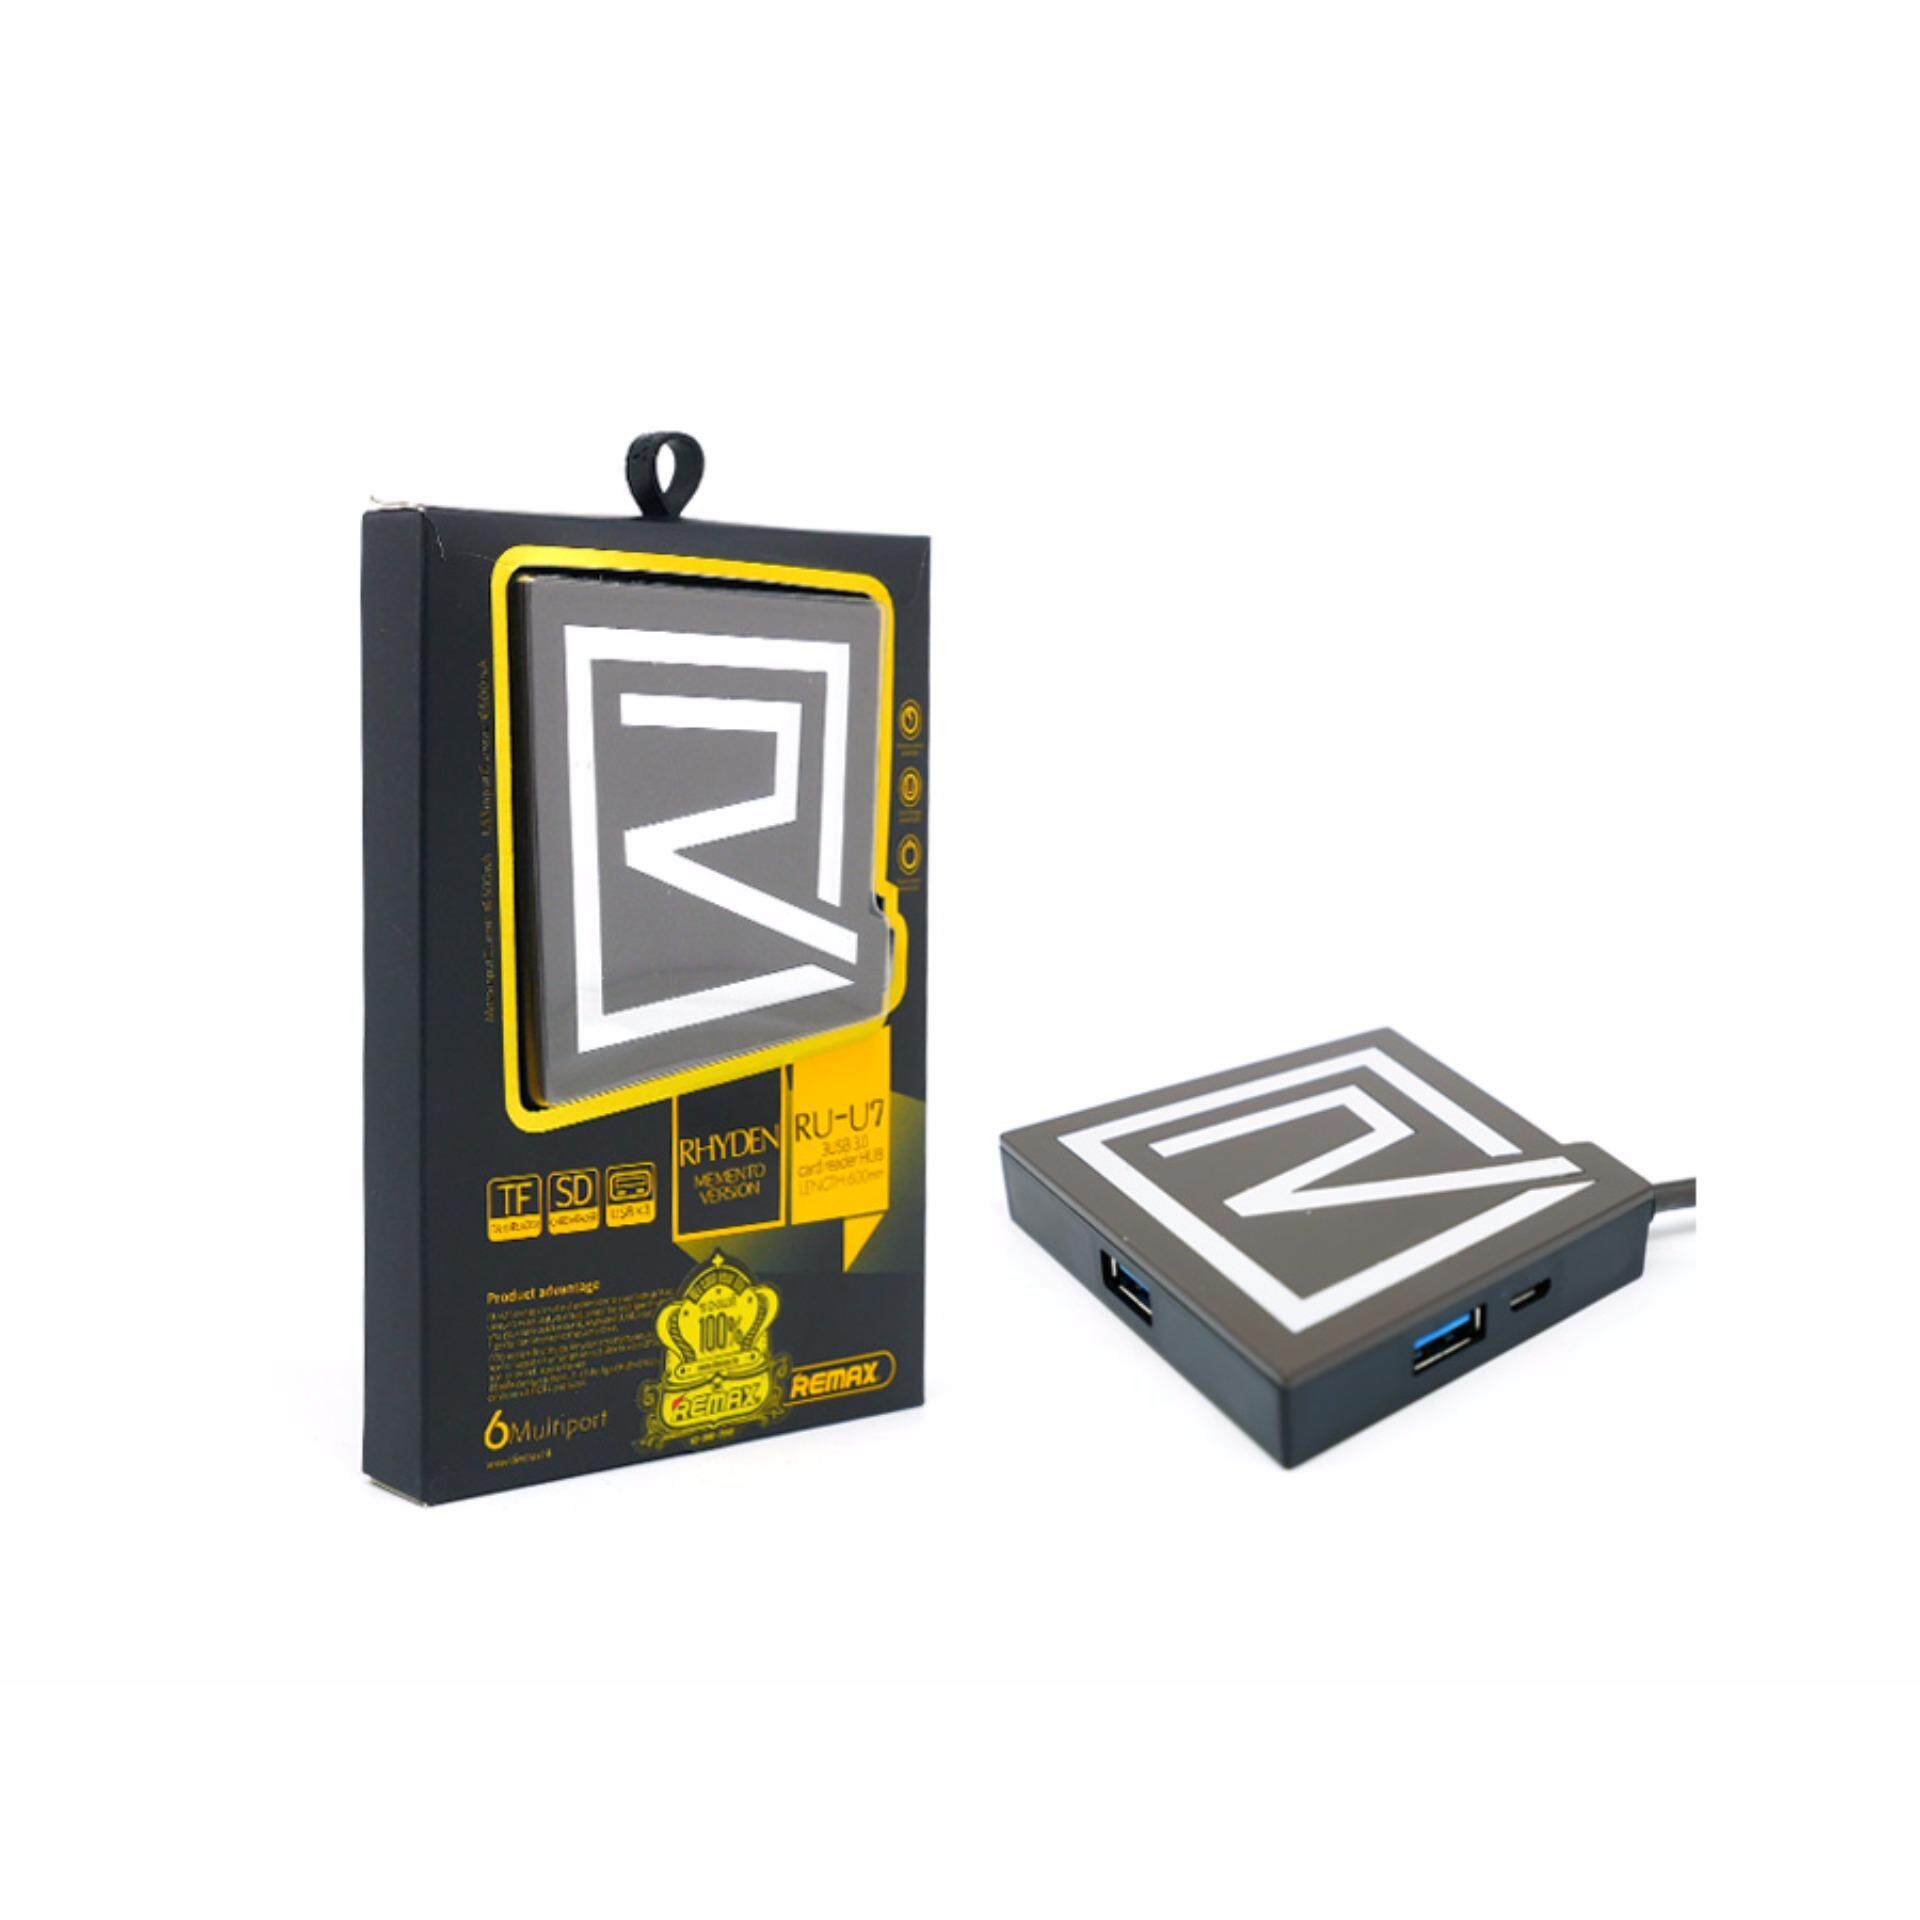 [IX] Remax RU-U7 3USB 3.0 Card Reader HUB 600mm (Rose Gold)